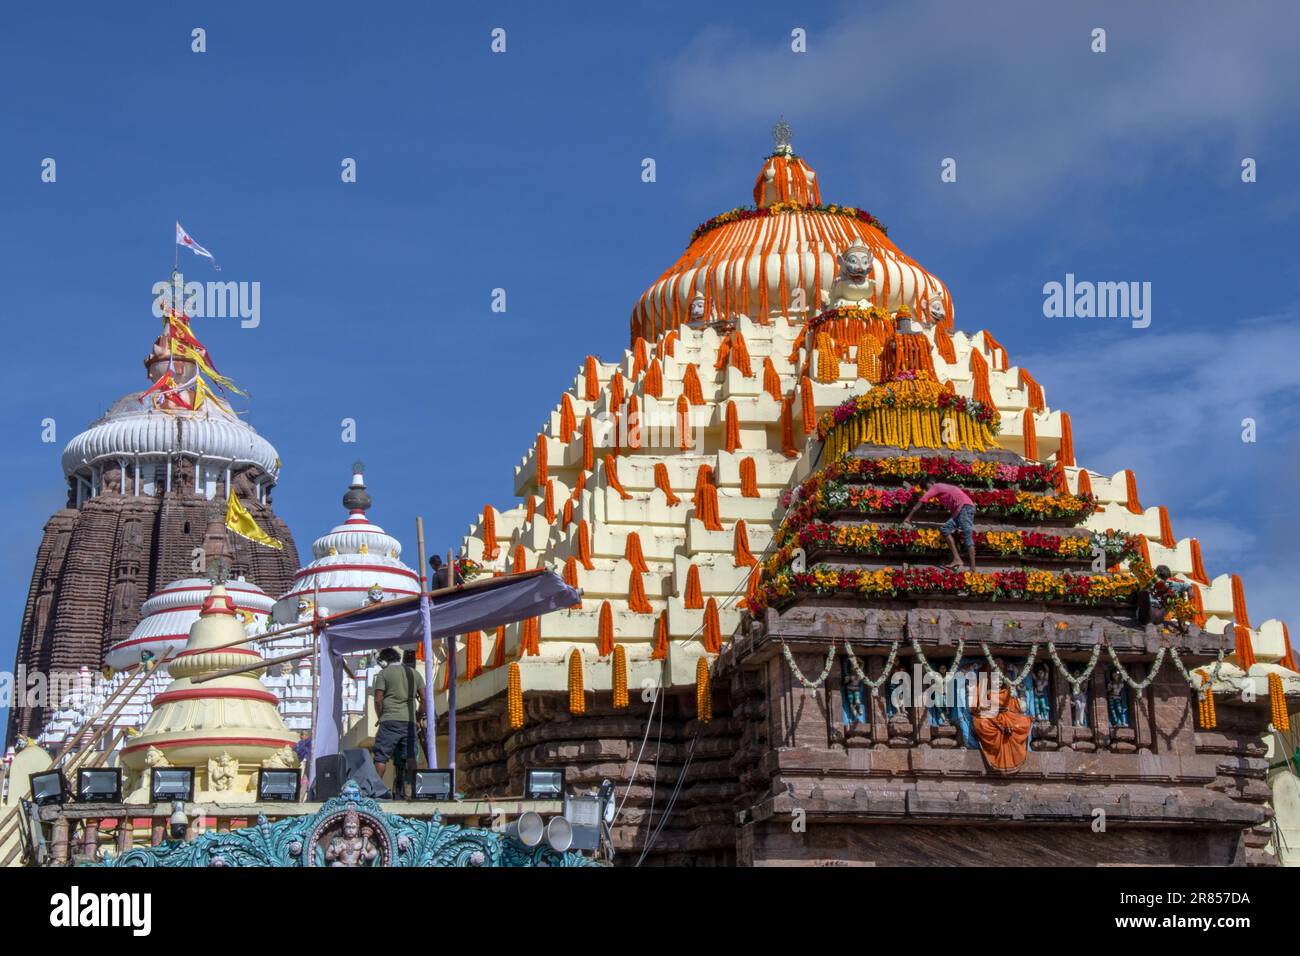 Sree Mandir(Jagannath temple) puri odisha india Stock Photo